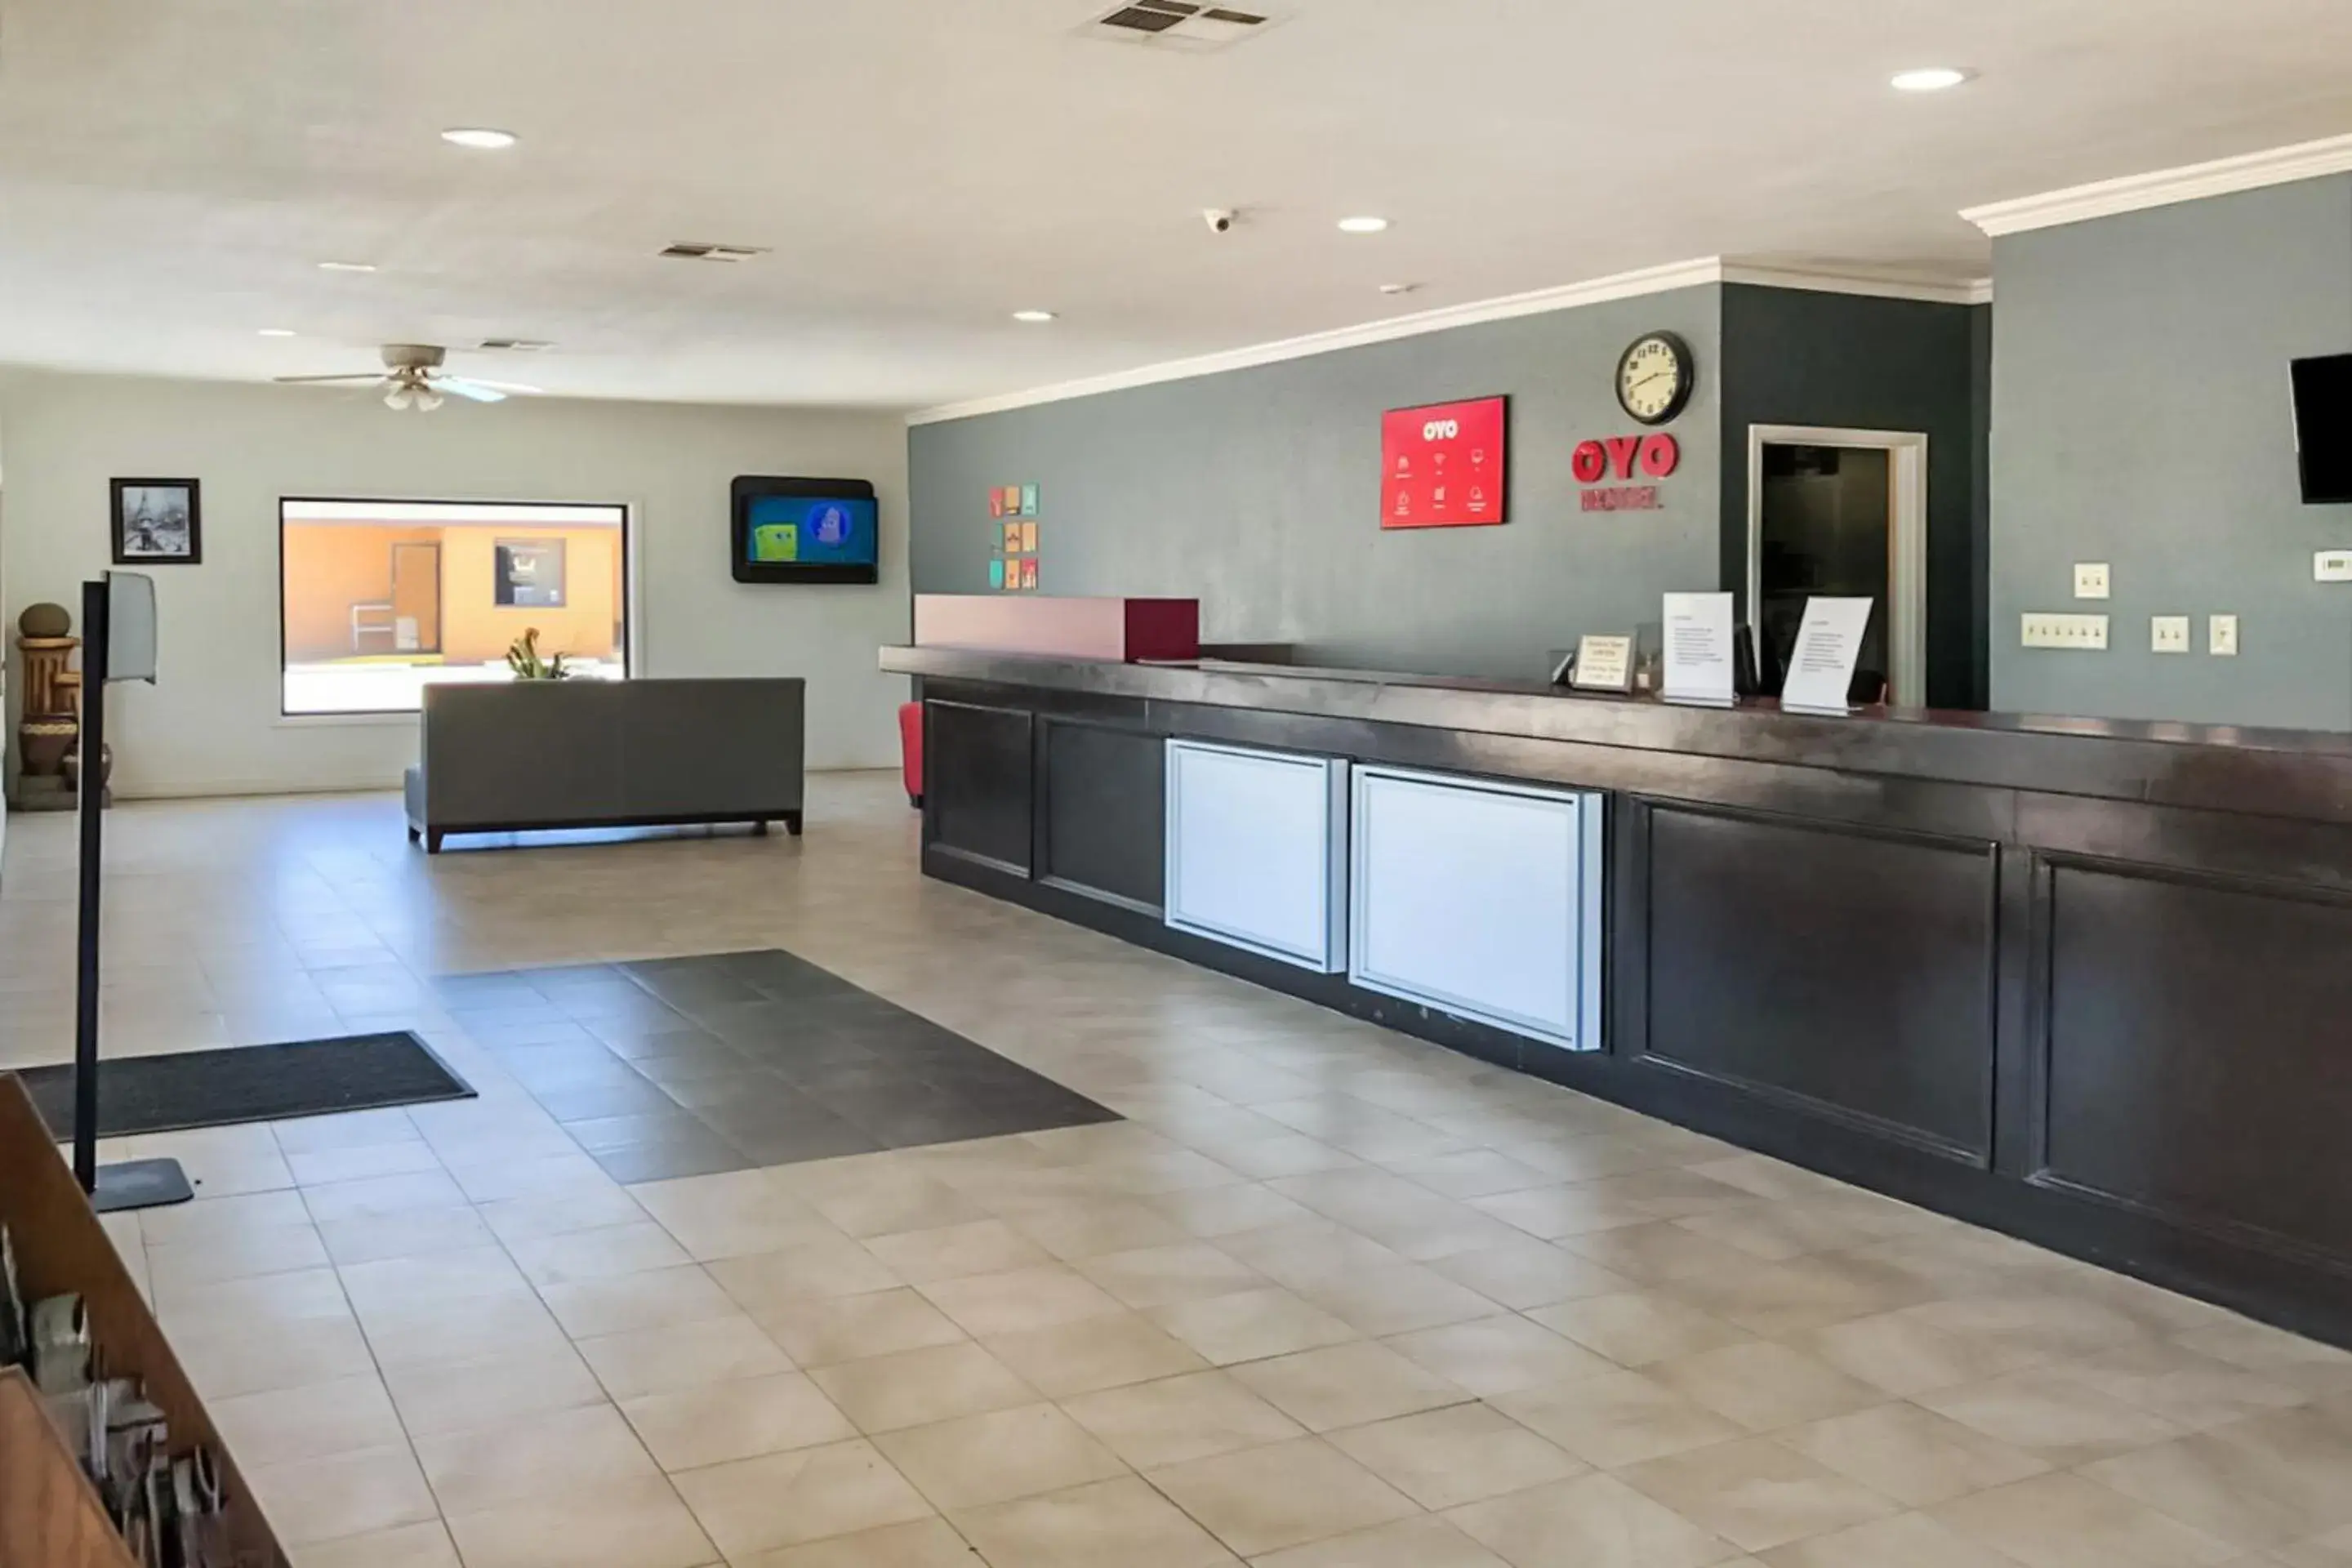 Lobby or reception, Lobby/Reception in OYO Hotel DeRidder Hwy 171 North